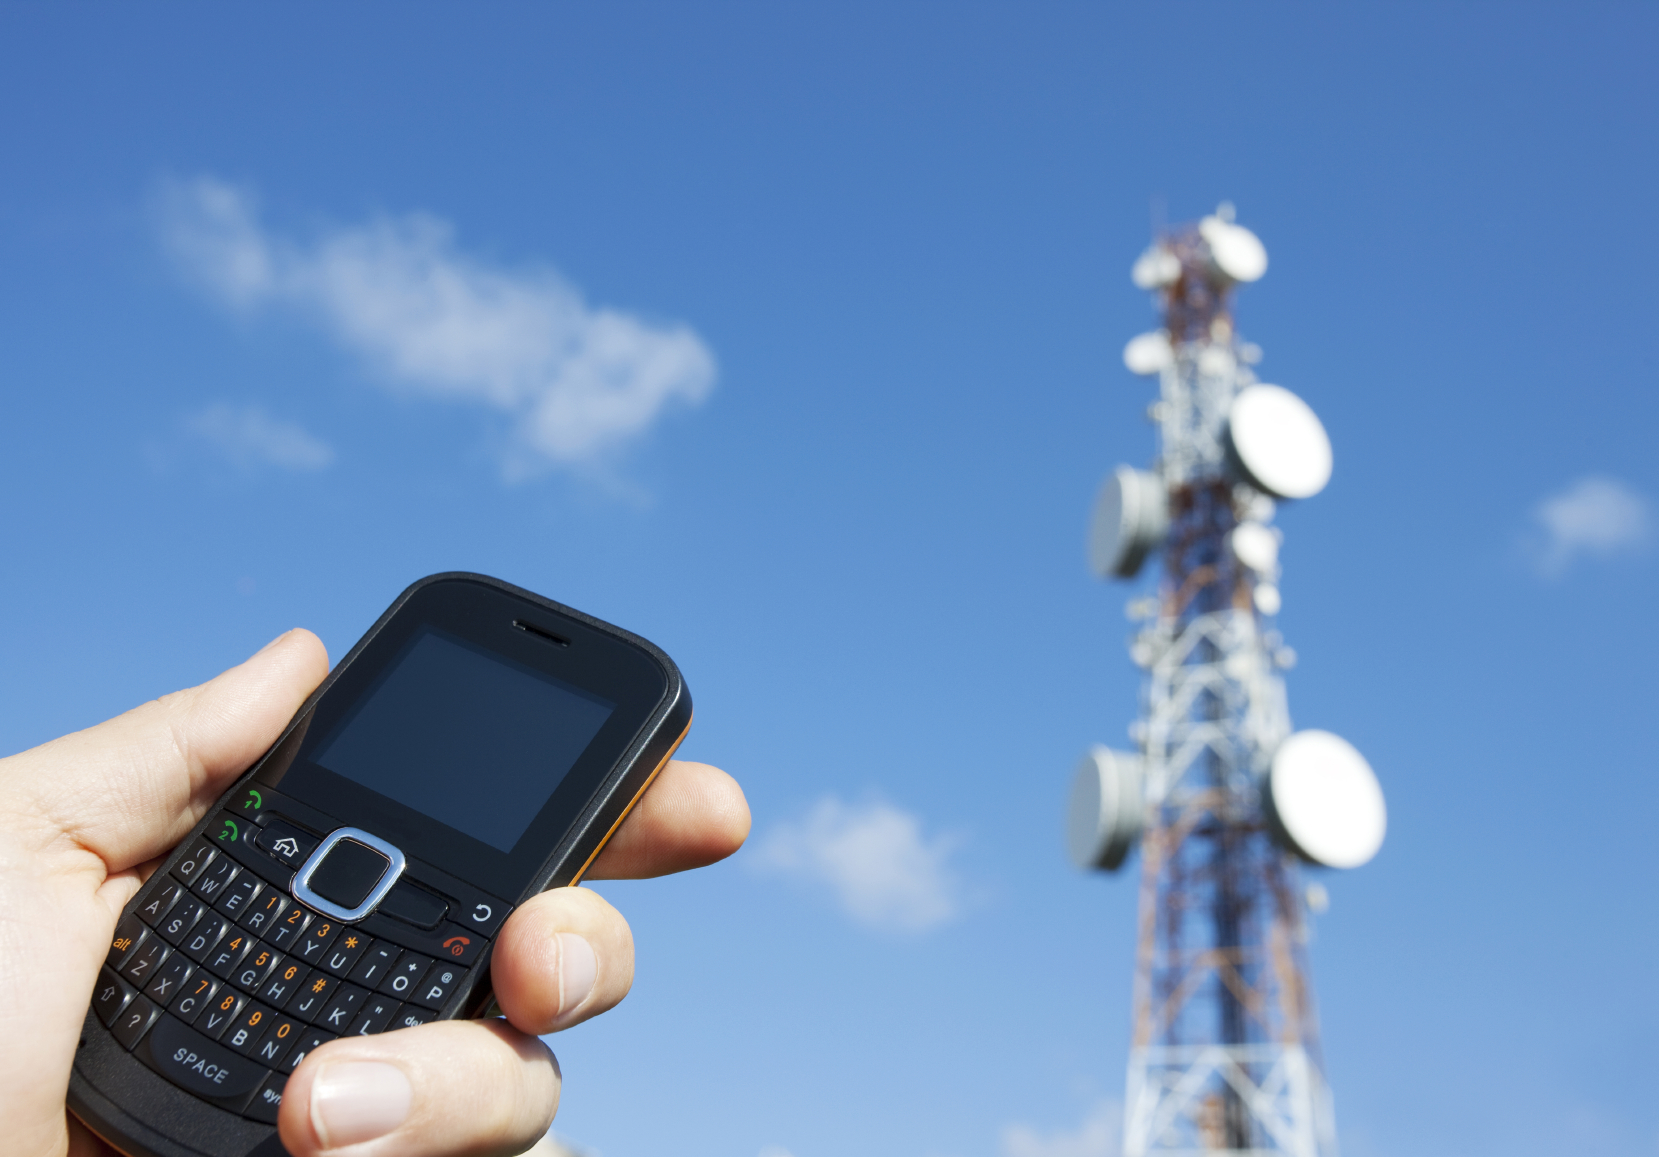 В Узбекистане охват мобильной связью населенных пунктов достиг 98%